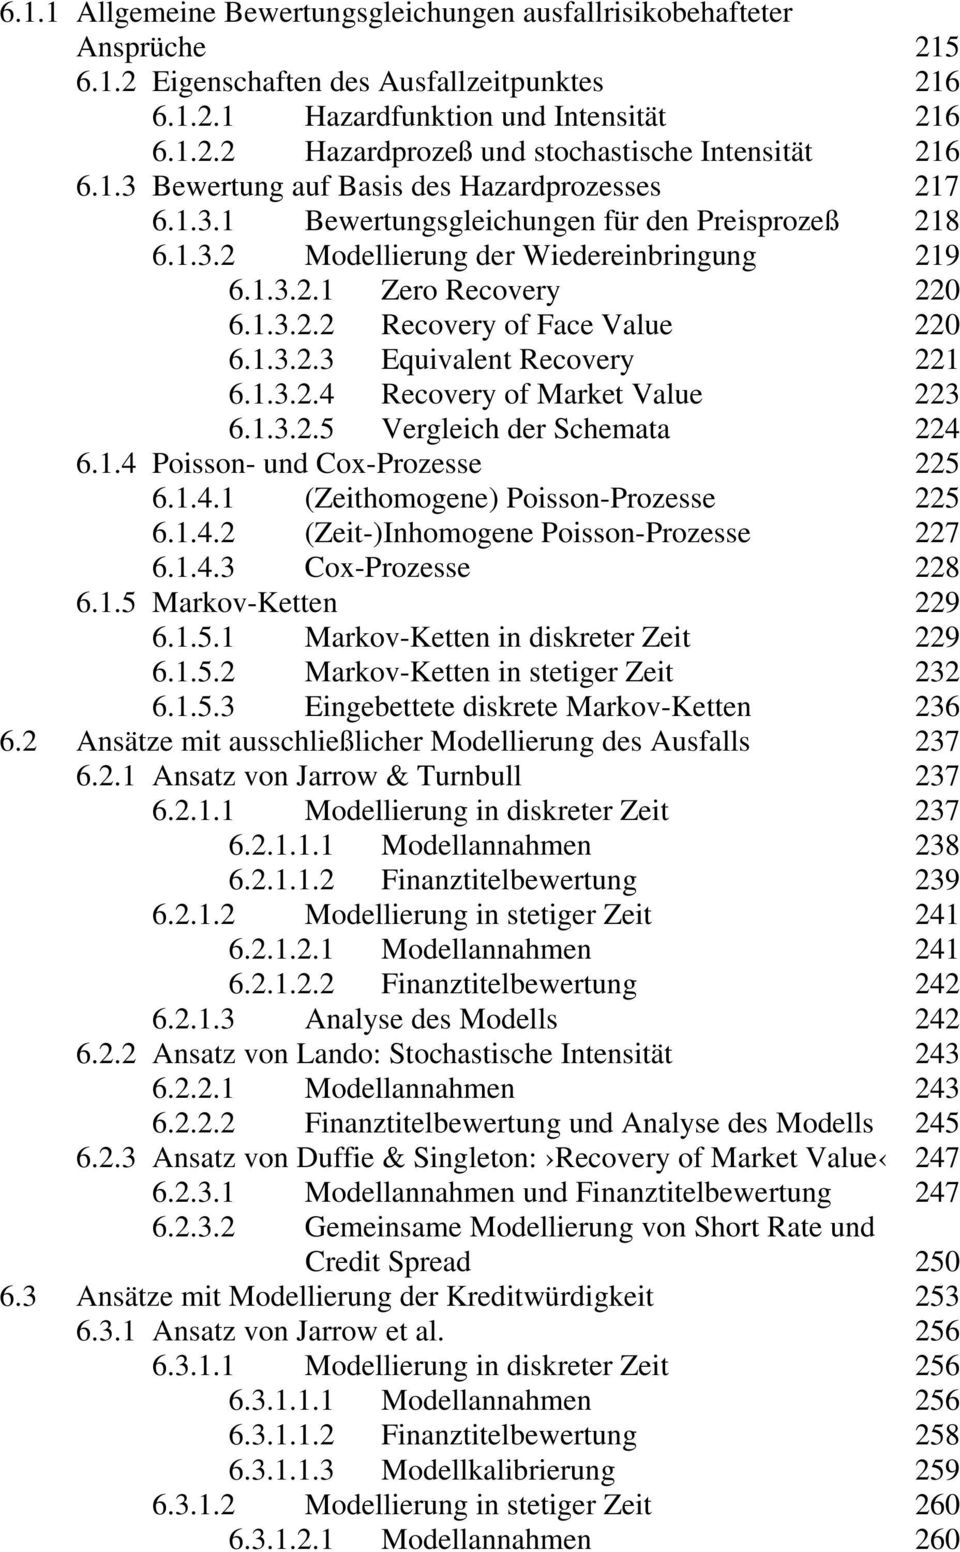 1.3.2.3 Equivalent Recovery 221 6.1.3.2.4 Recovery of Market Value 223 6.1.3.2.5 Vergleich der Schemata 224 6.1.4 Poisson- und Cox-Prozesse 225 6.1.4.1 (Zeithomogene) Poisson-Prozesse 225 6.1.4.2 (Zeit-)Inhomogene Poisson-Prozesse 227 6.